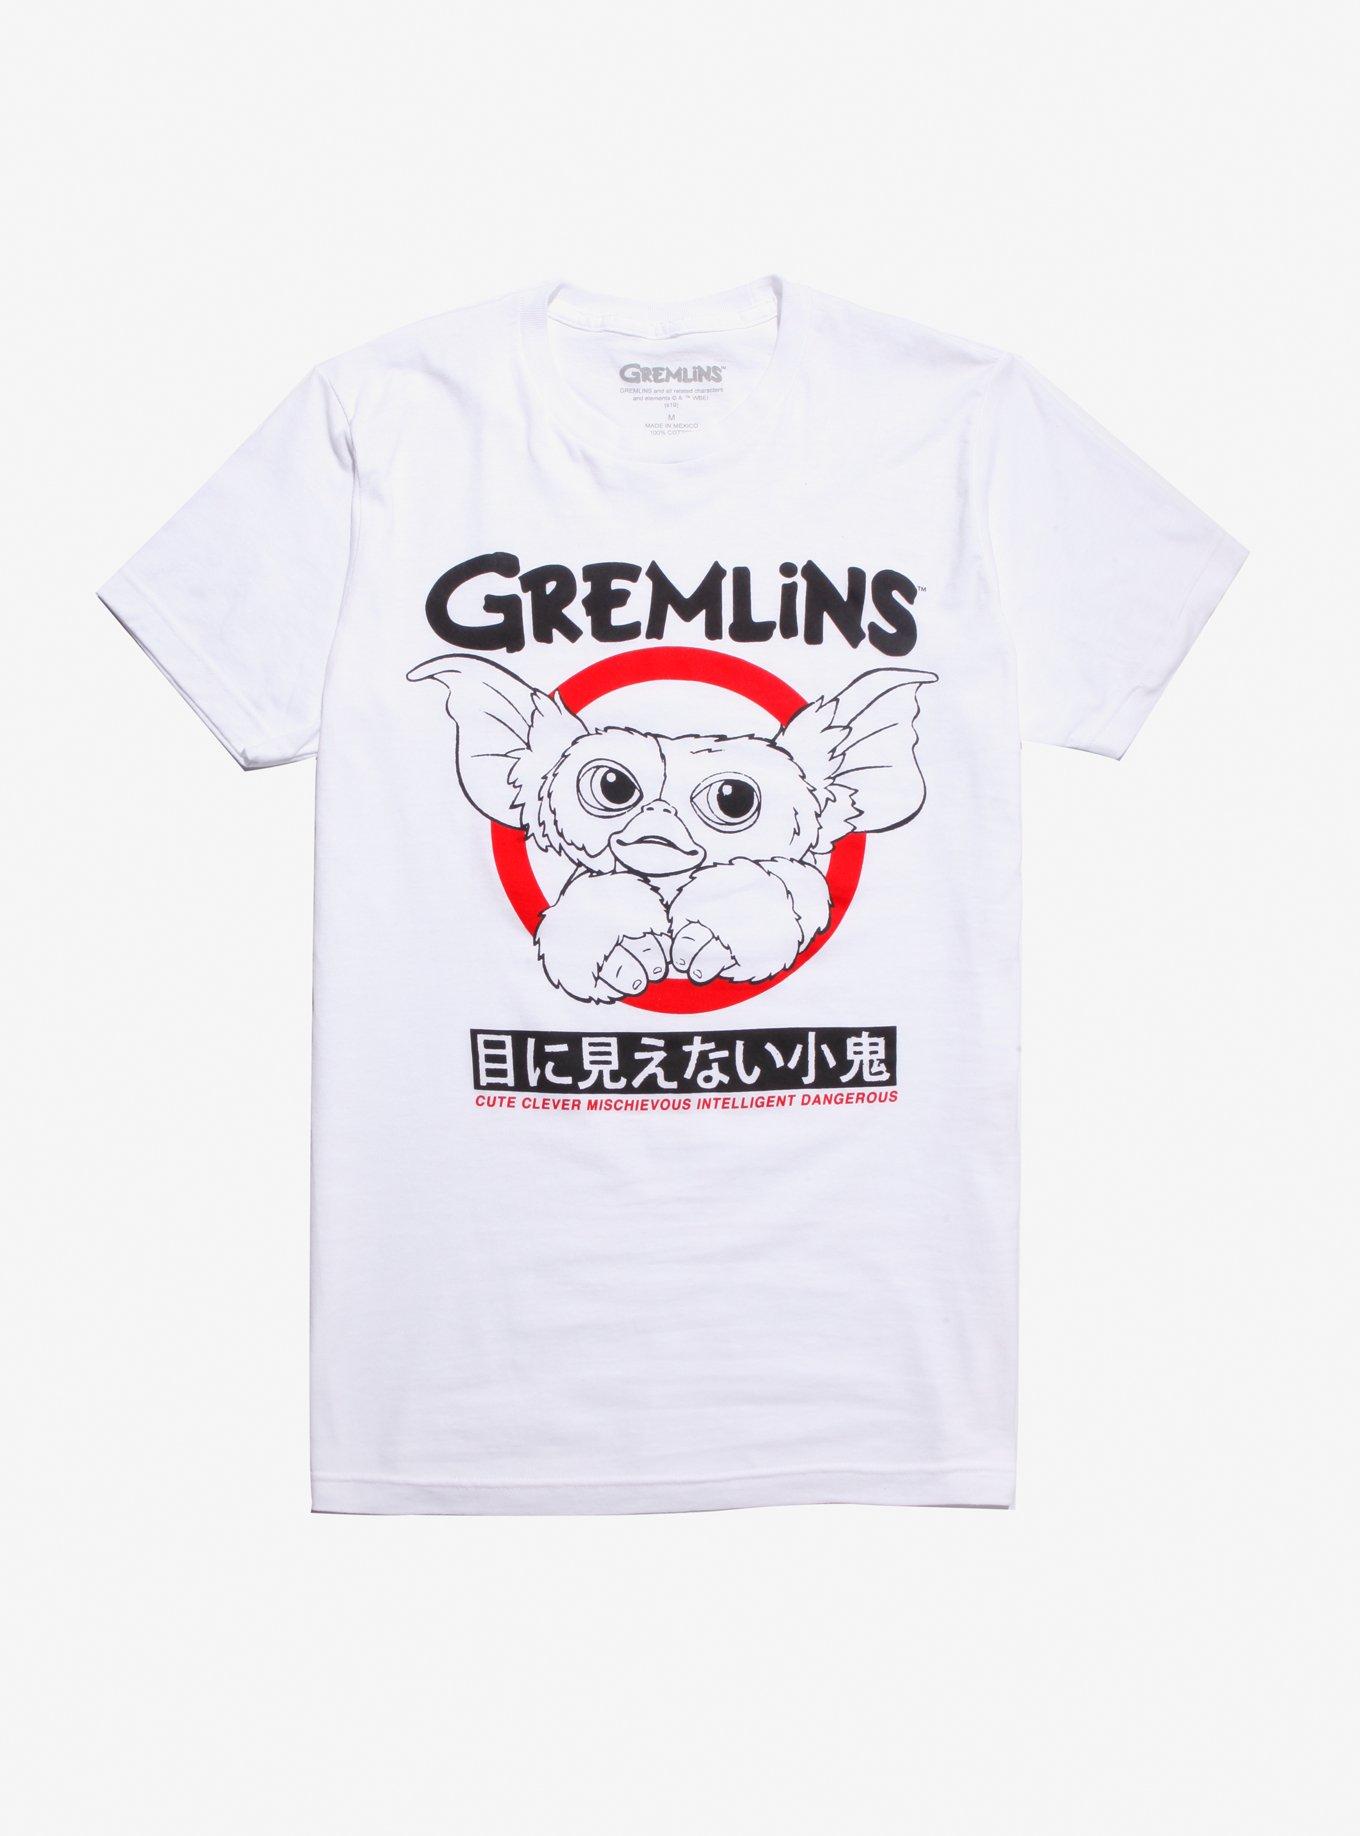 Gremlins Gizmo Line Art T-Shirt, RED, hi-res